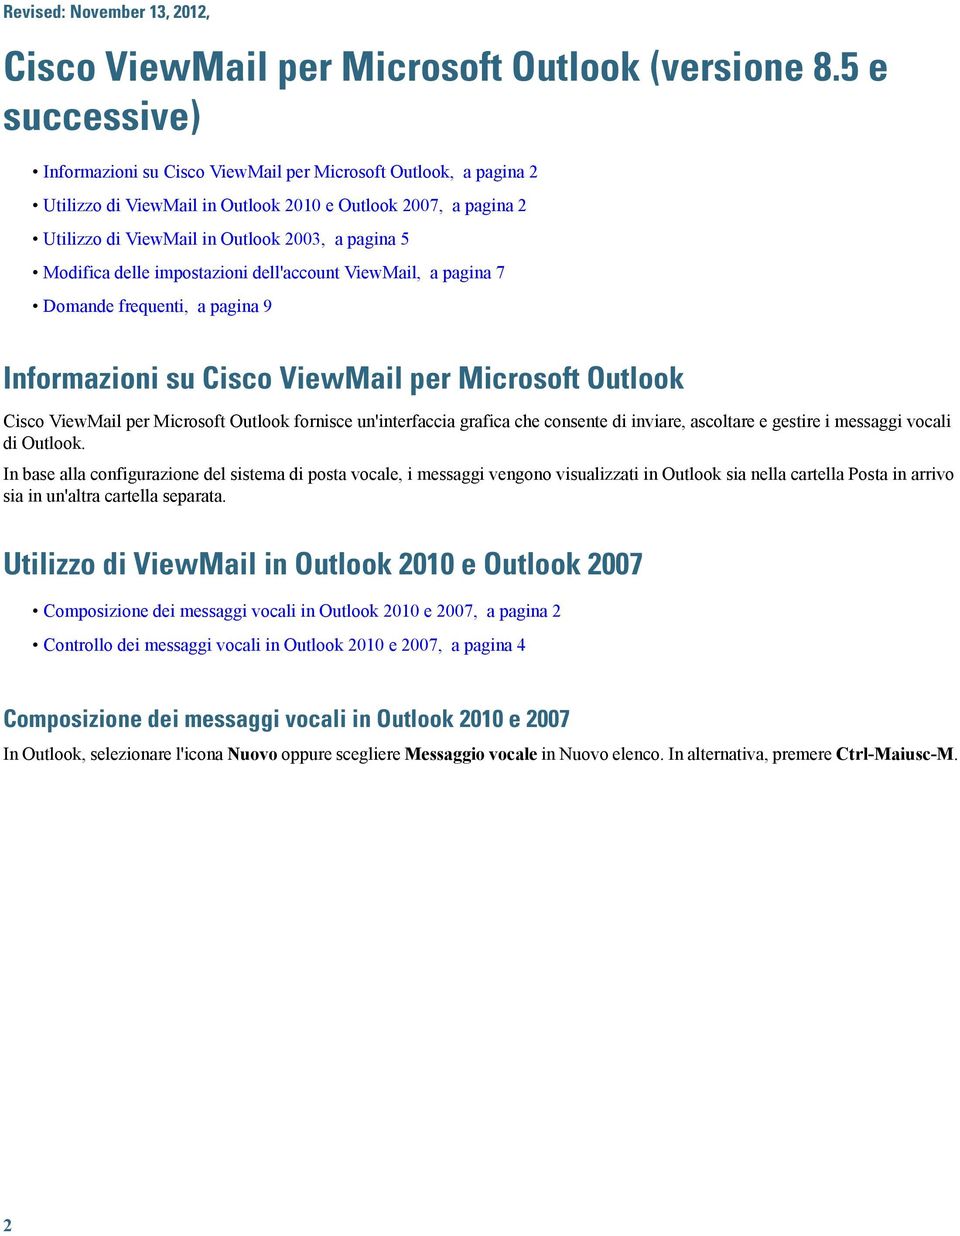 impostazioni dell'account ViewMail, a pagina 7 Domande frequenti, a pagina 9 Informazioni su Cisco ViewMail per Microsoft Outlook Cisco ViewMail per Microsoft Outlook fornisce un'interfaccia grafica